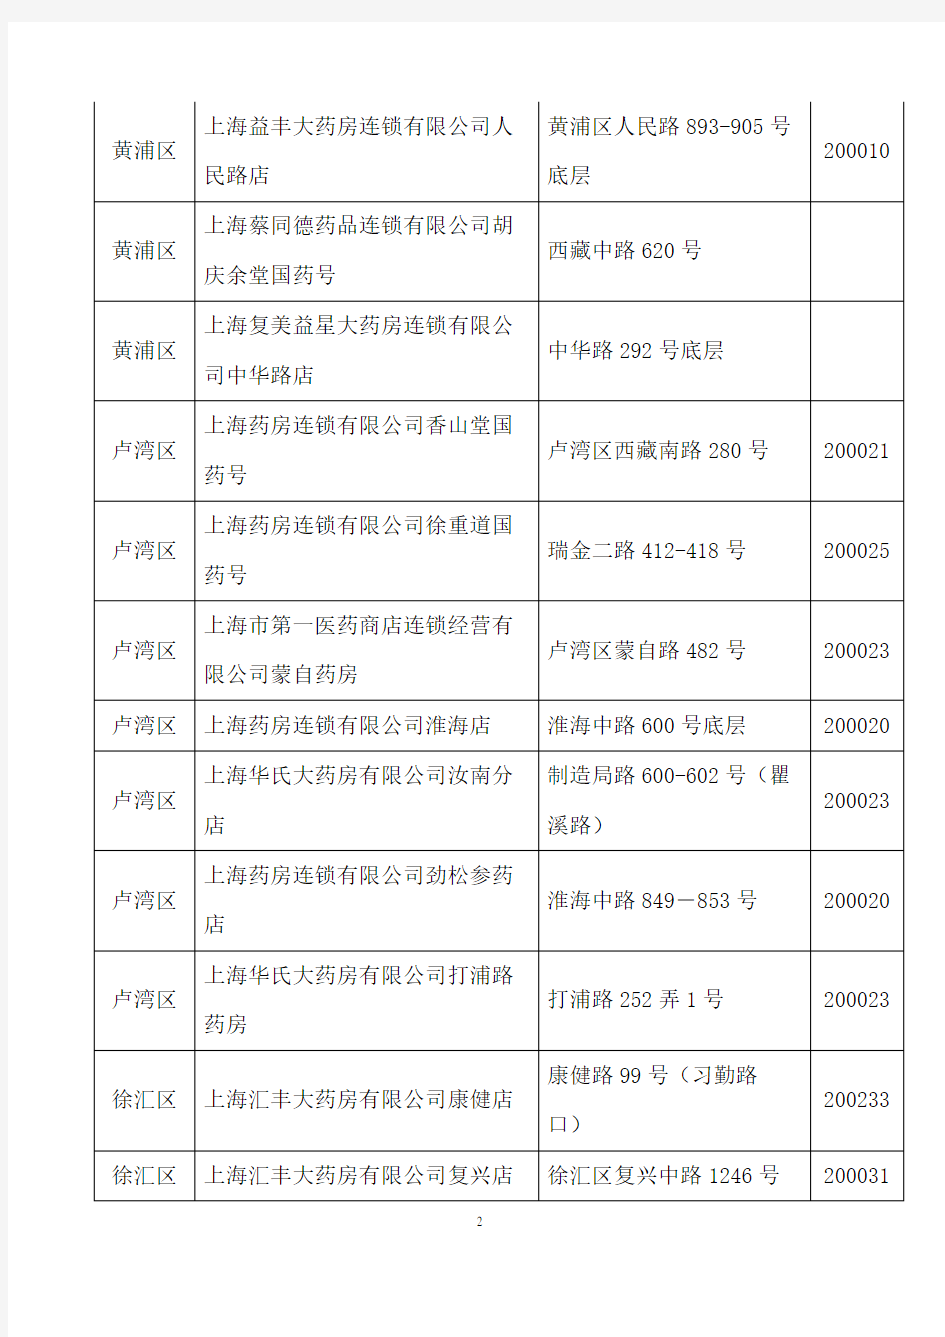 上海医保定点药店(完整版、各区县全、2015年5月最新)